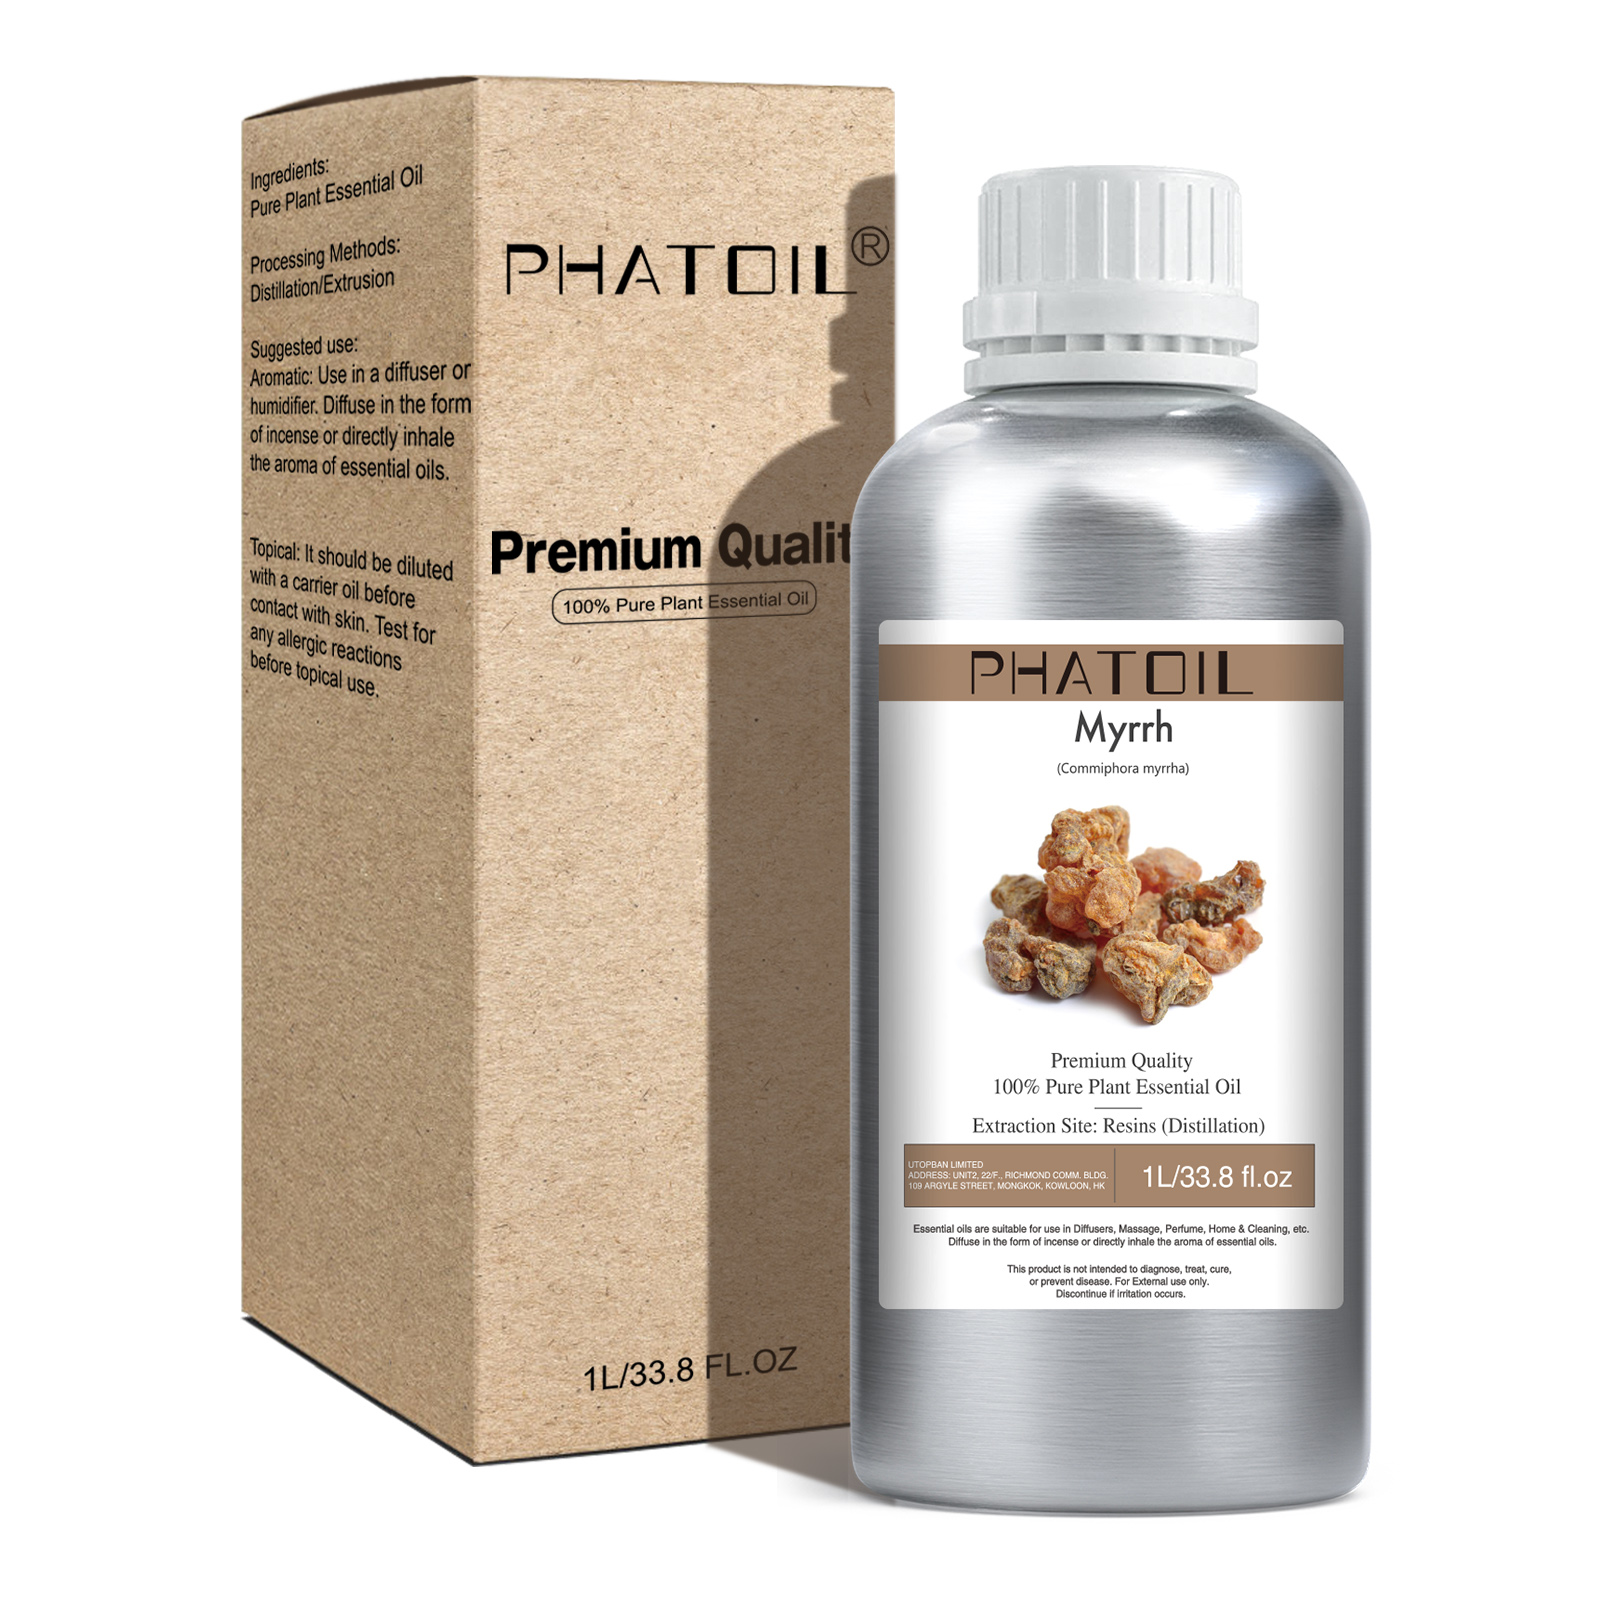 Phatoil 1L Myrrh Essential Oil With Aluminium Bottle